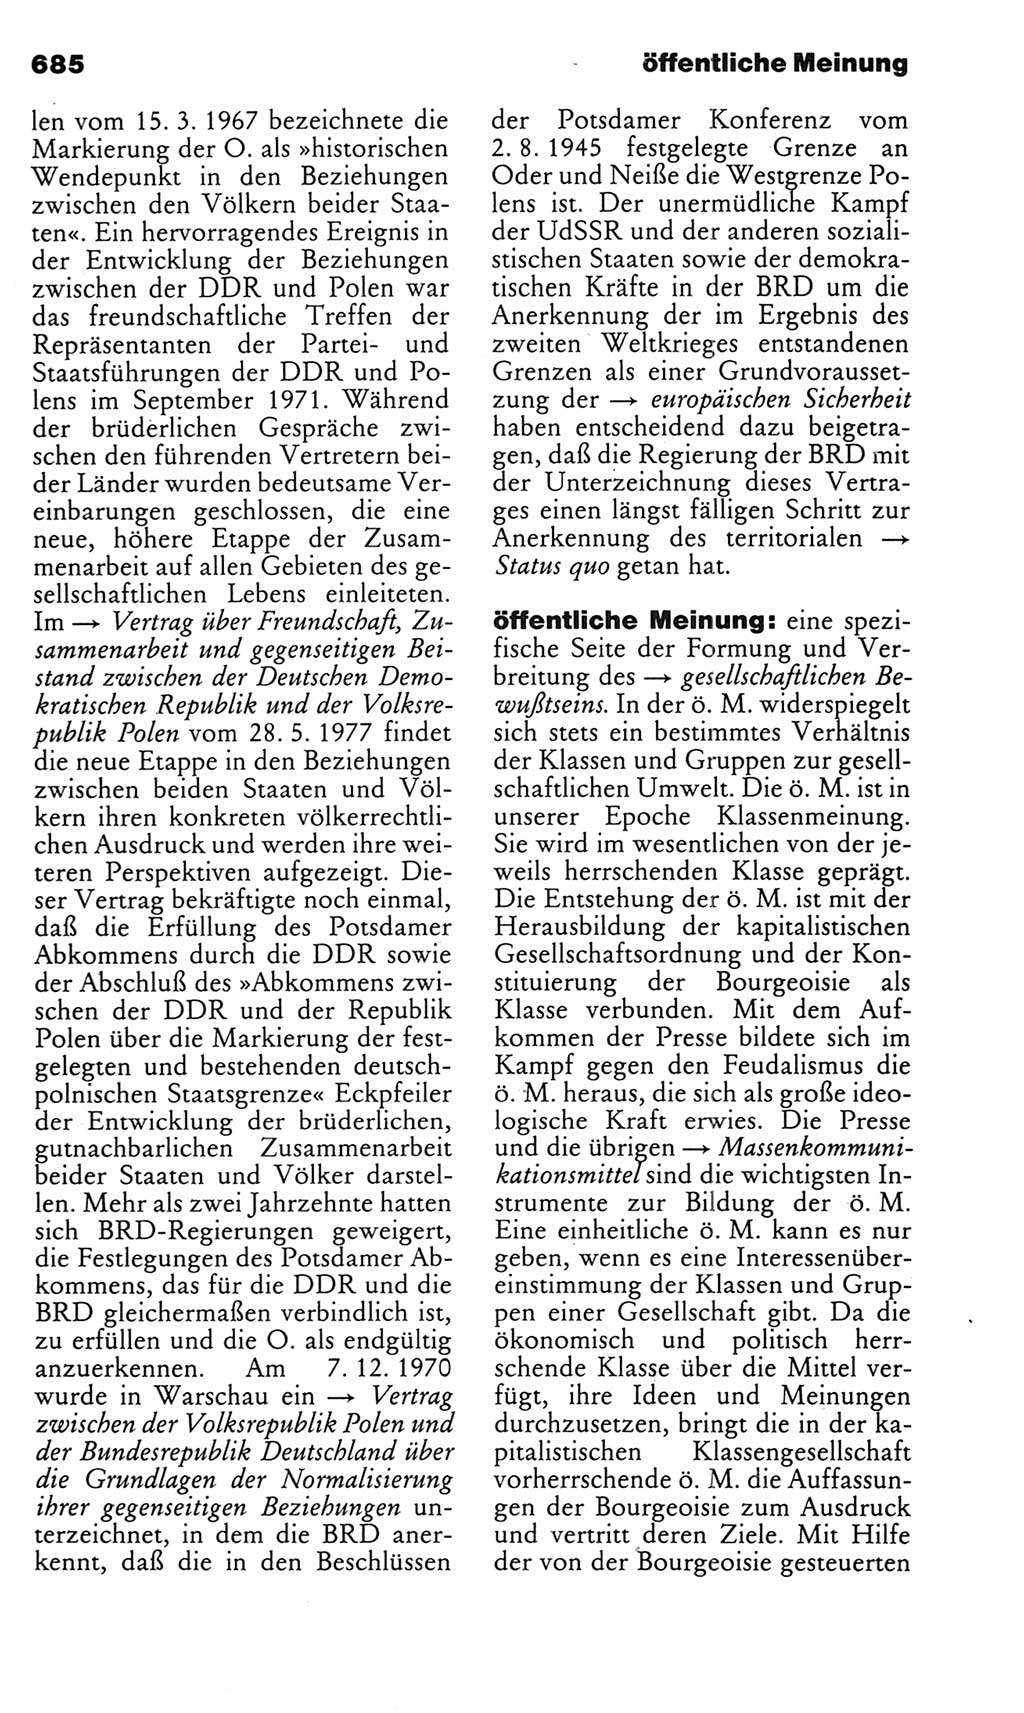 Kleines politisches Wörterbuch [Deutsche Demokratische Republik (DDR)] 1983, Seite 685 (Kl. pol. Wb. DDR 1983, S. 685)